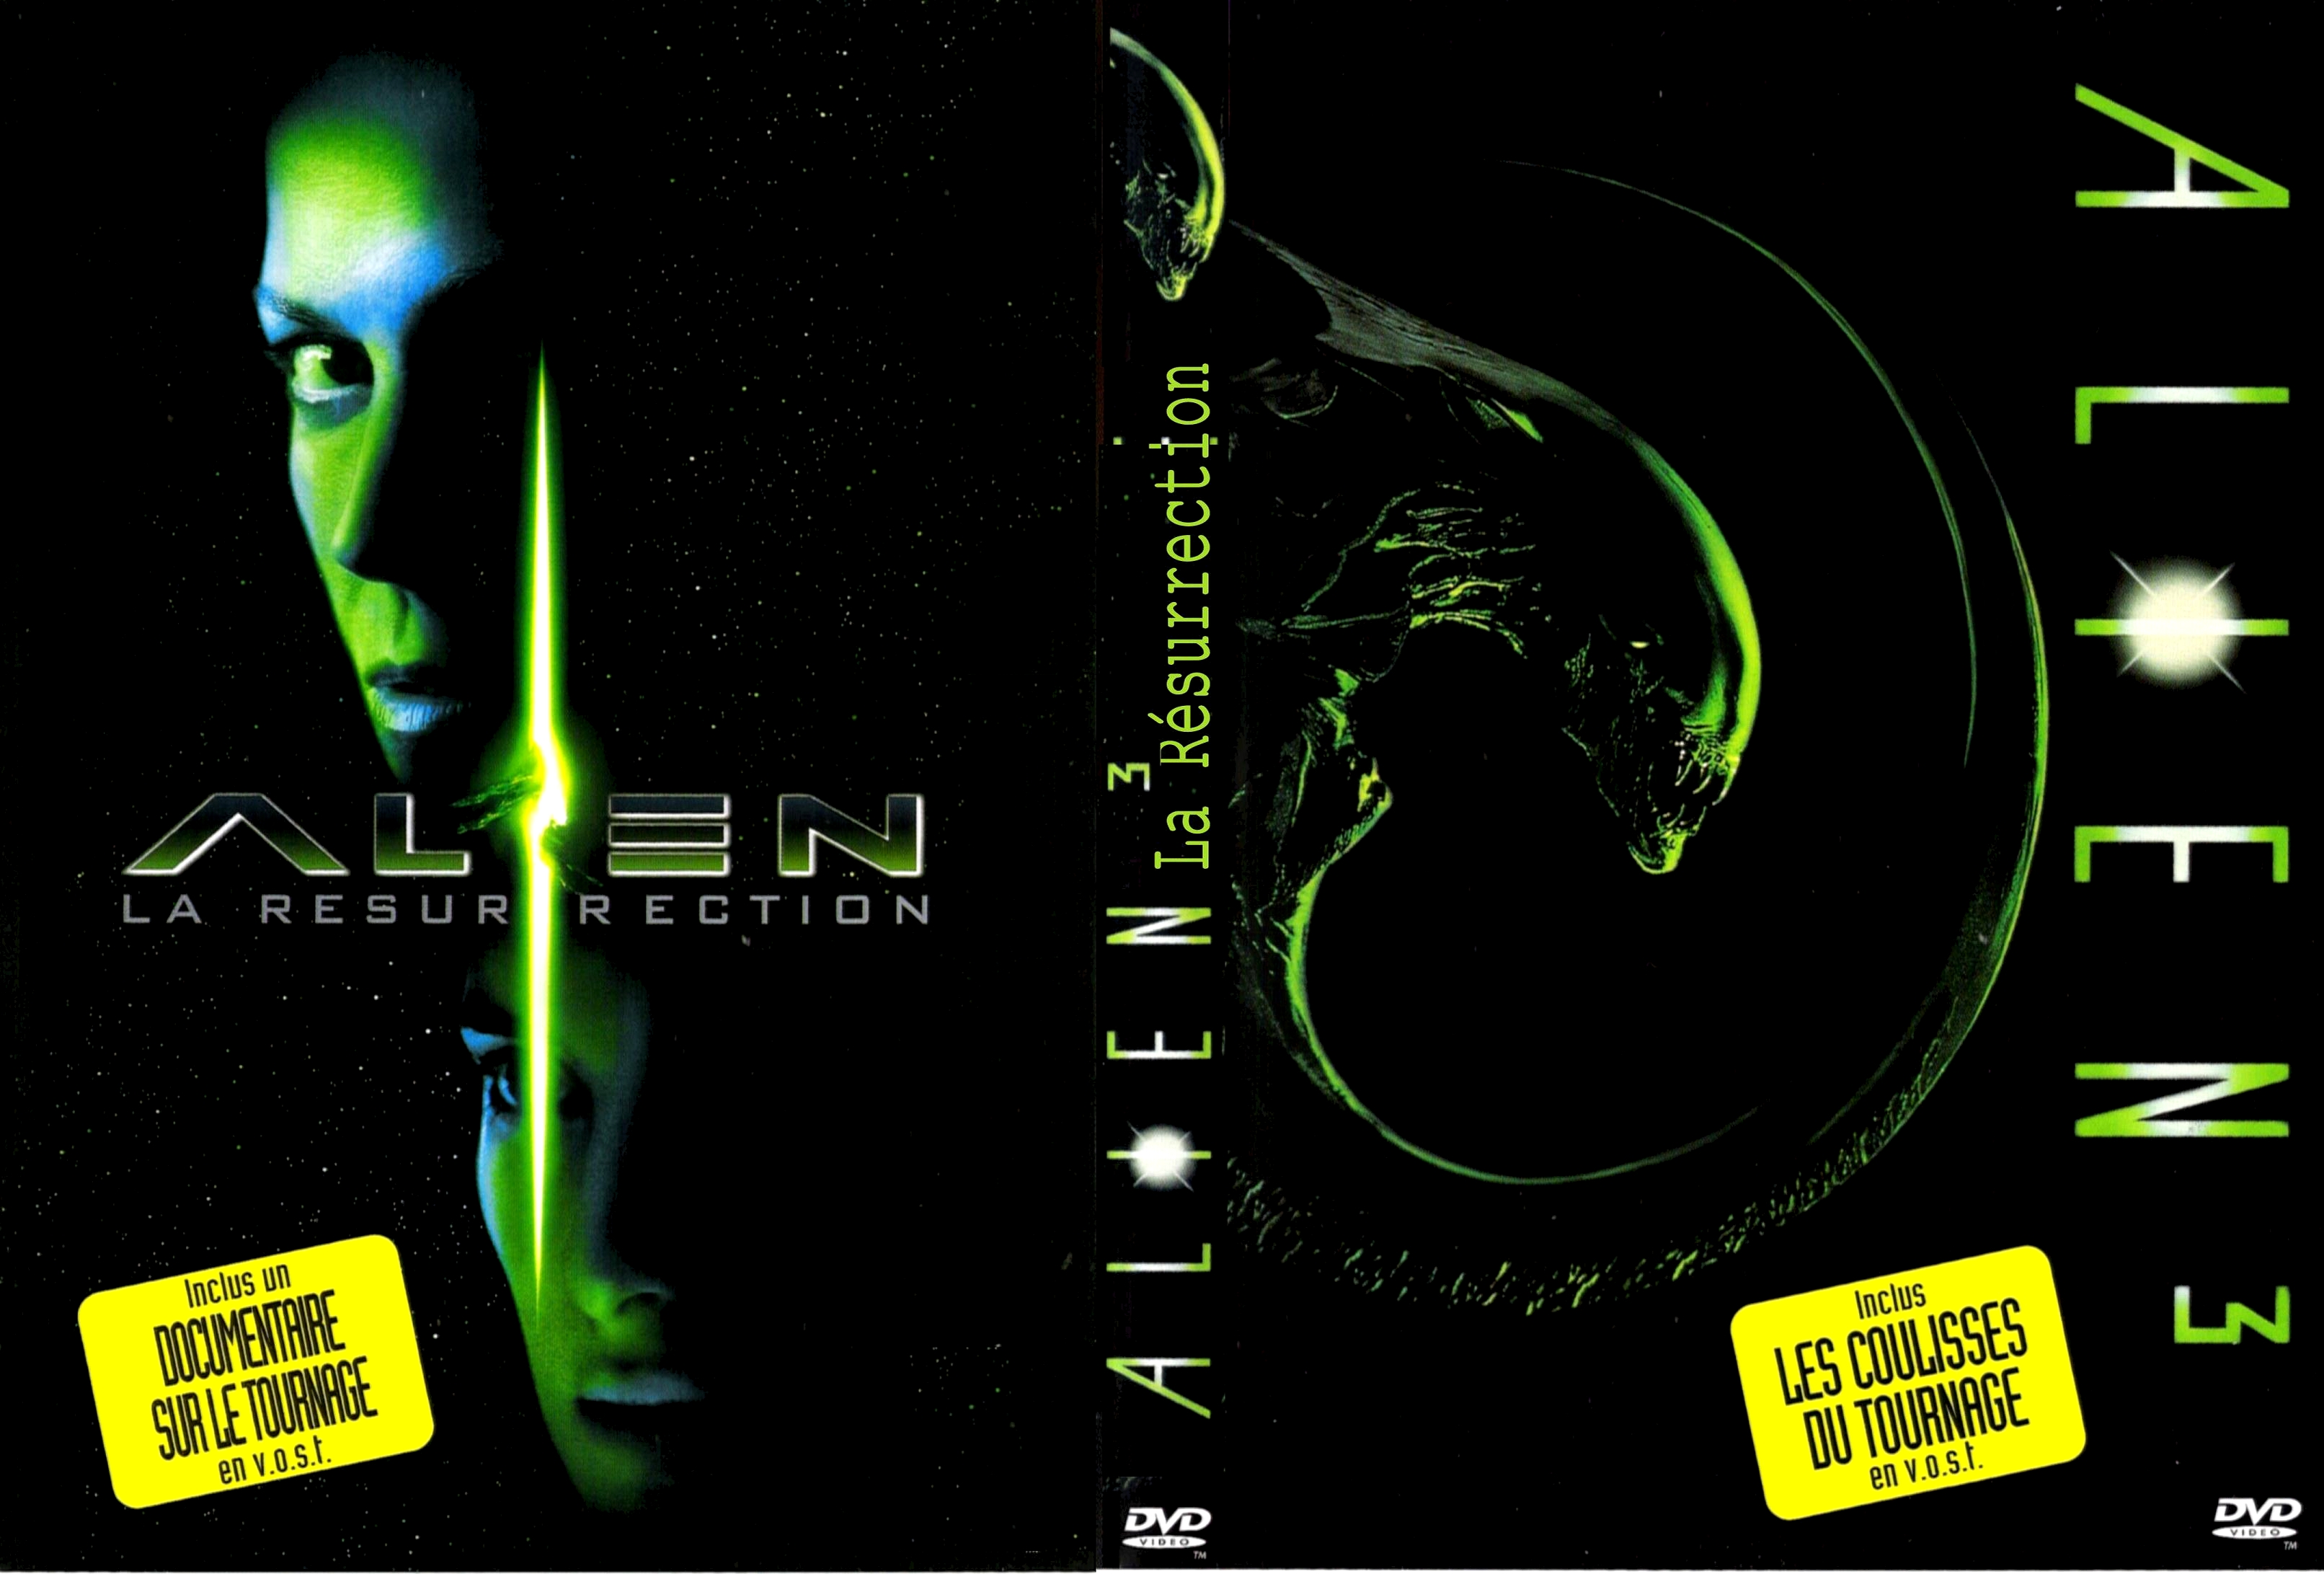 Jaquette DVD Alien 3 + Alien la ressurection